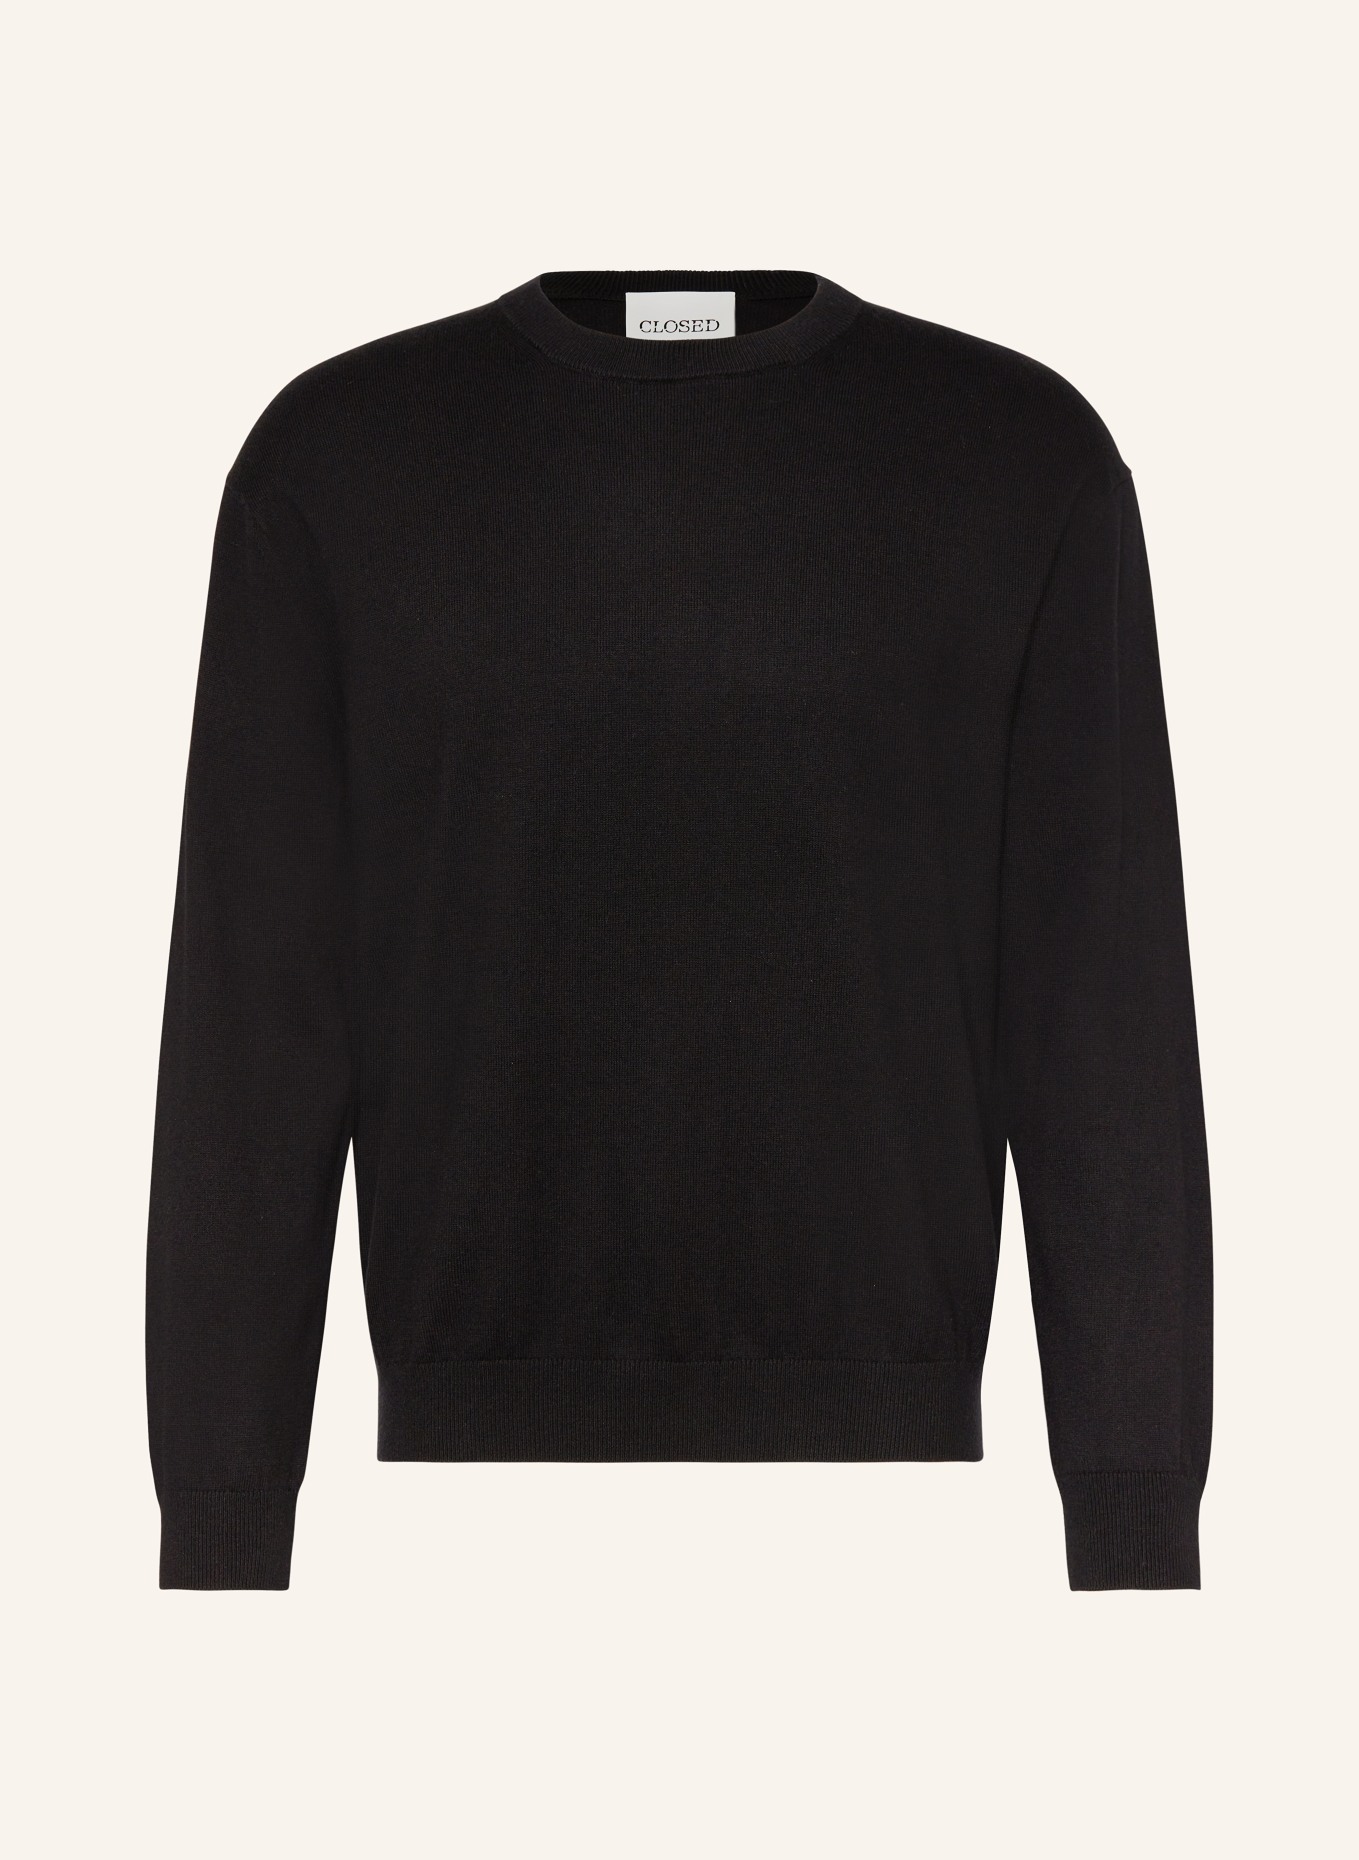 CLOSED Pullover, Farbe: SCHWARZ (Bild 1)